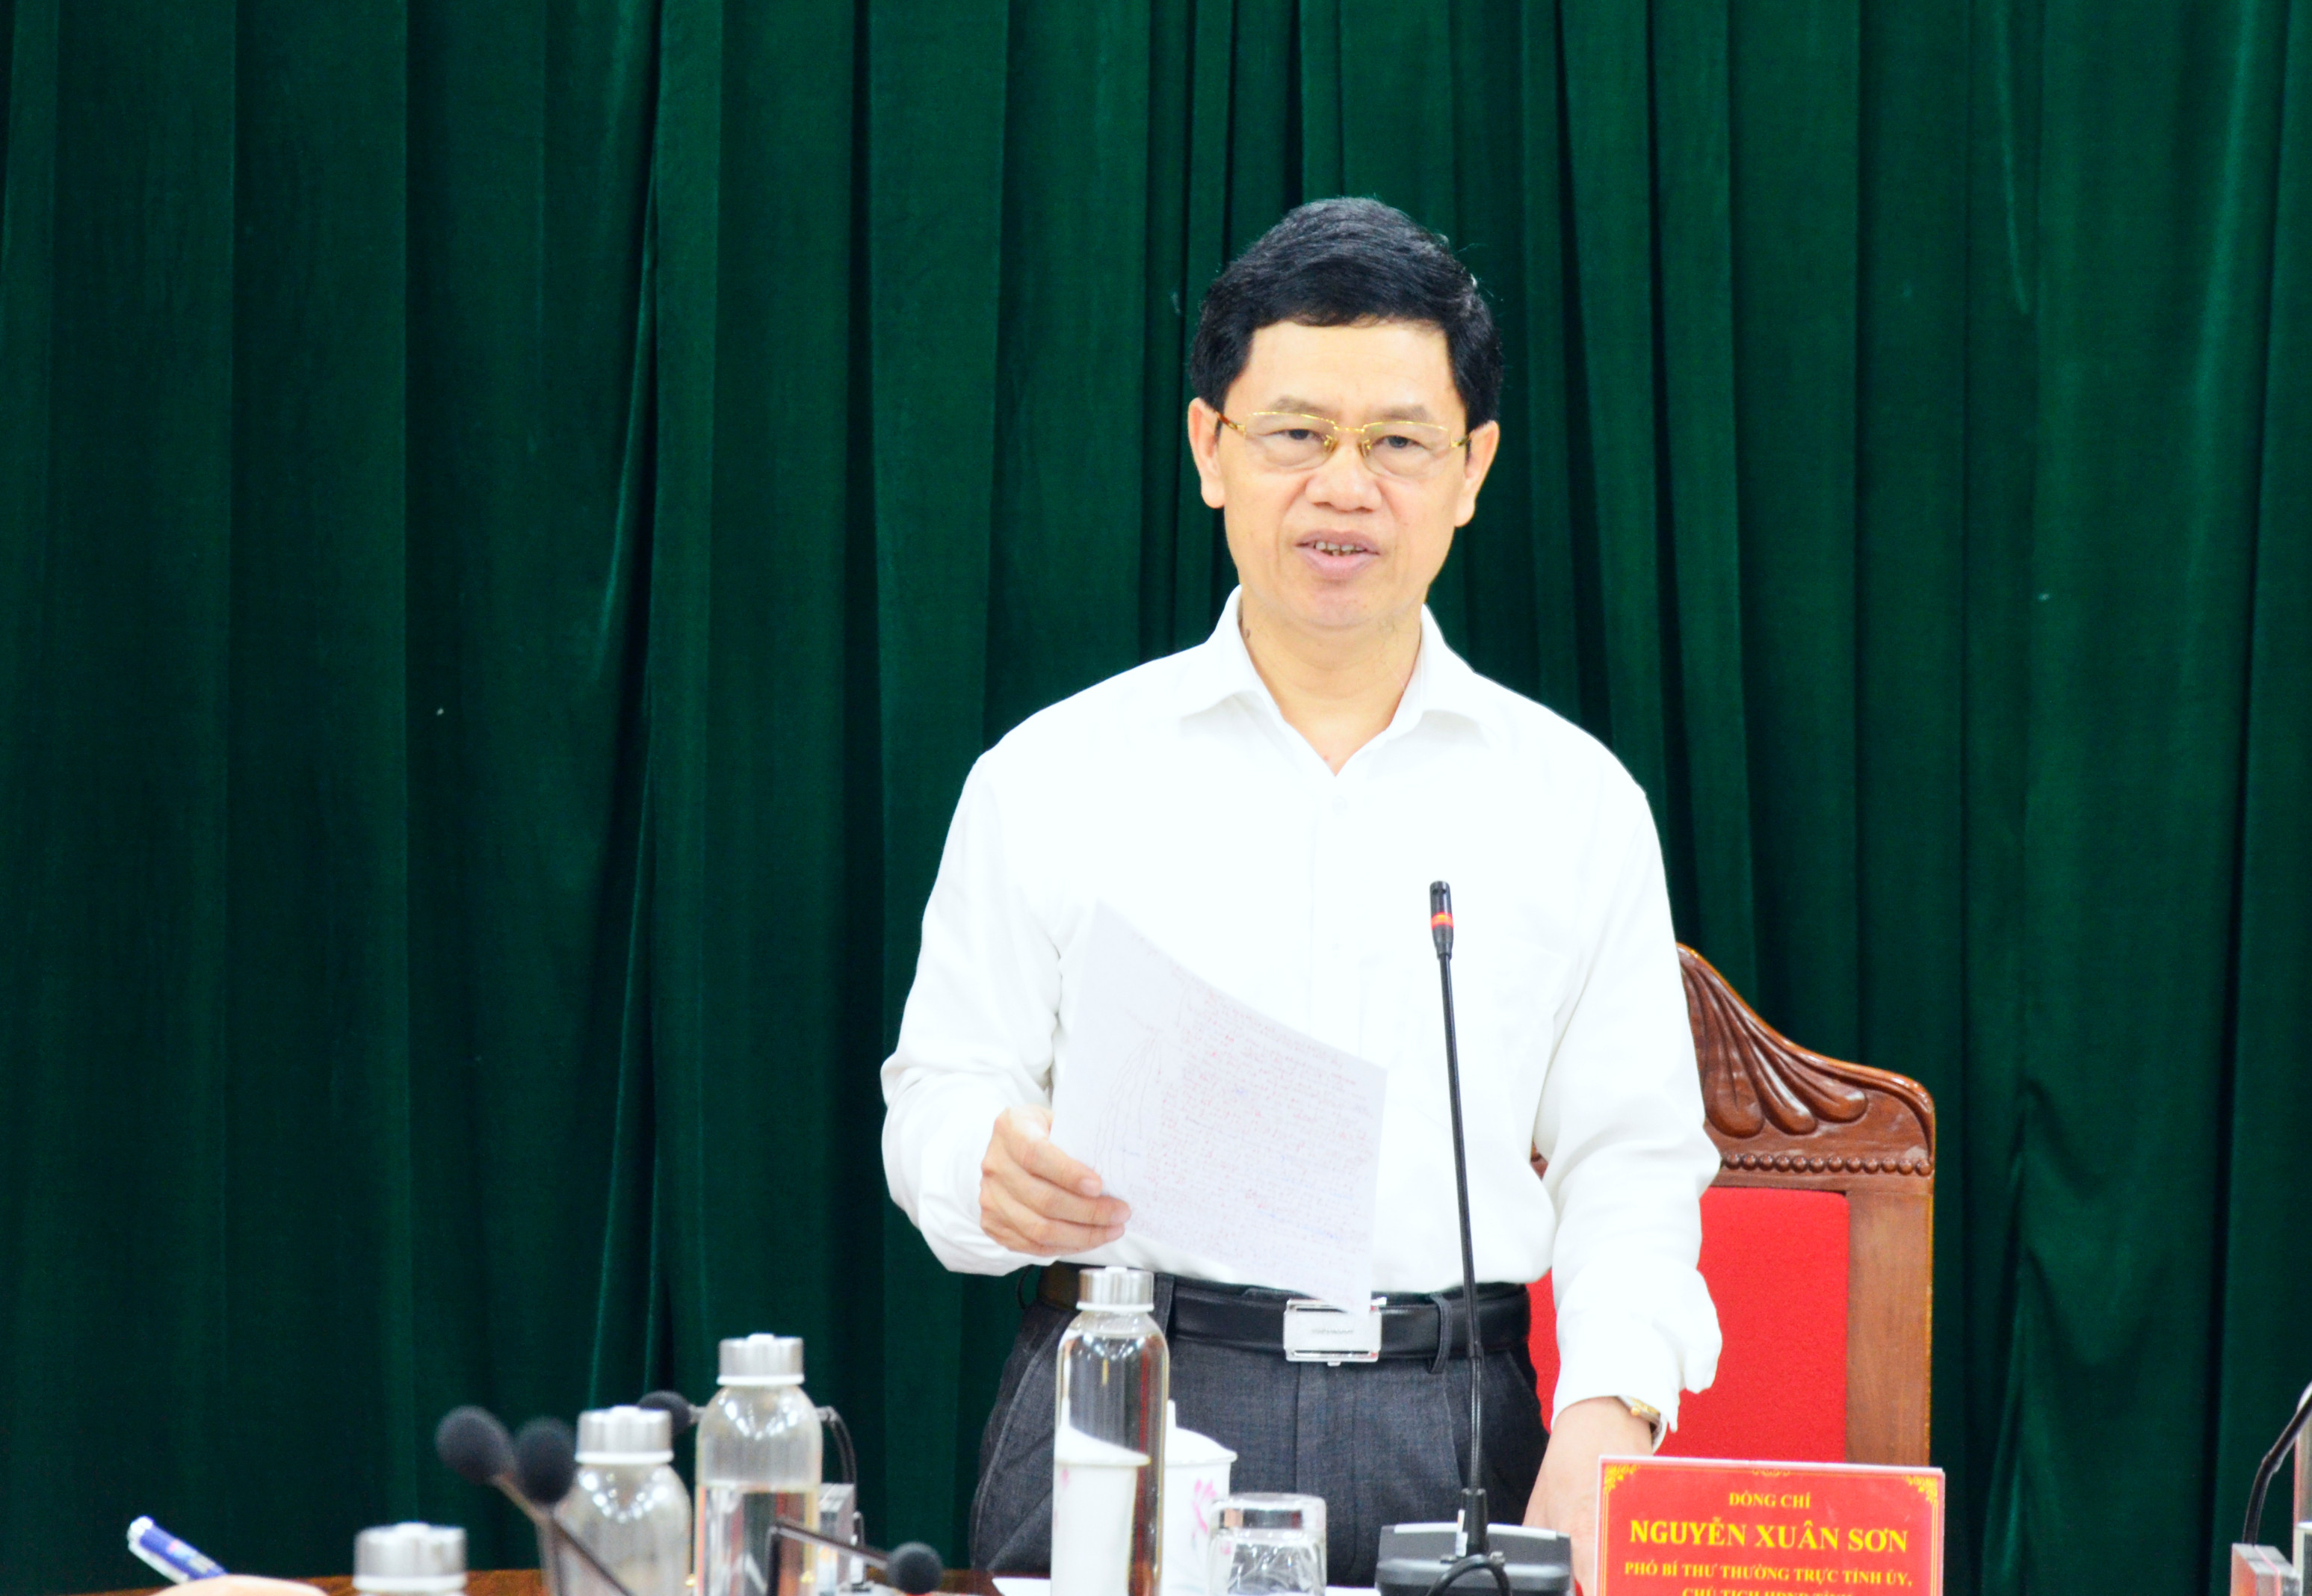 Phó Bí thư Thường trực Nguyễn Xuân Sơn kết luận hội nghị.  Ảnh: Thanh Lê